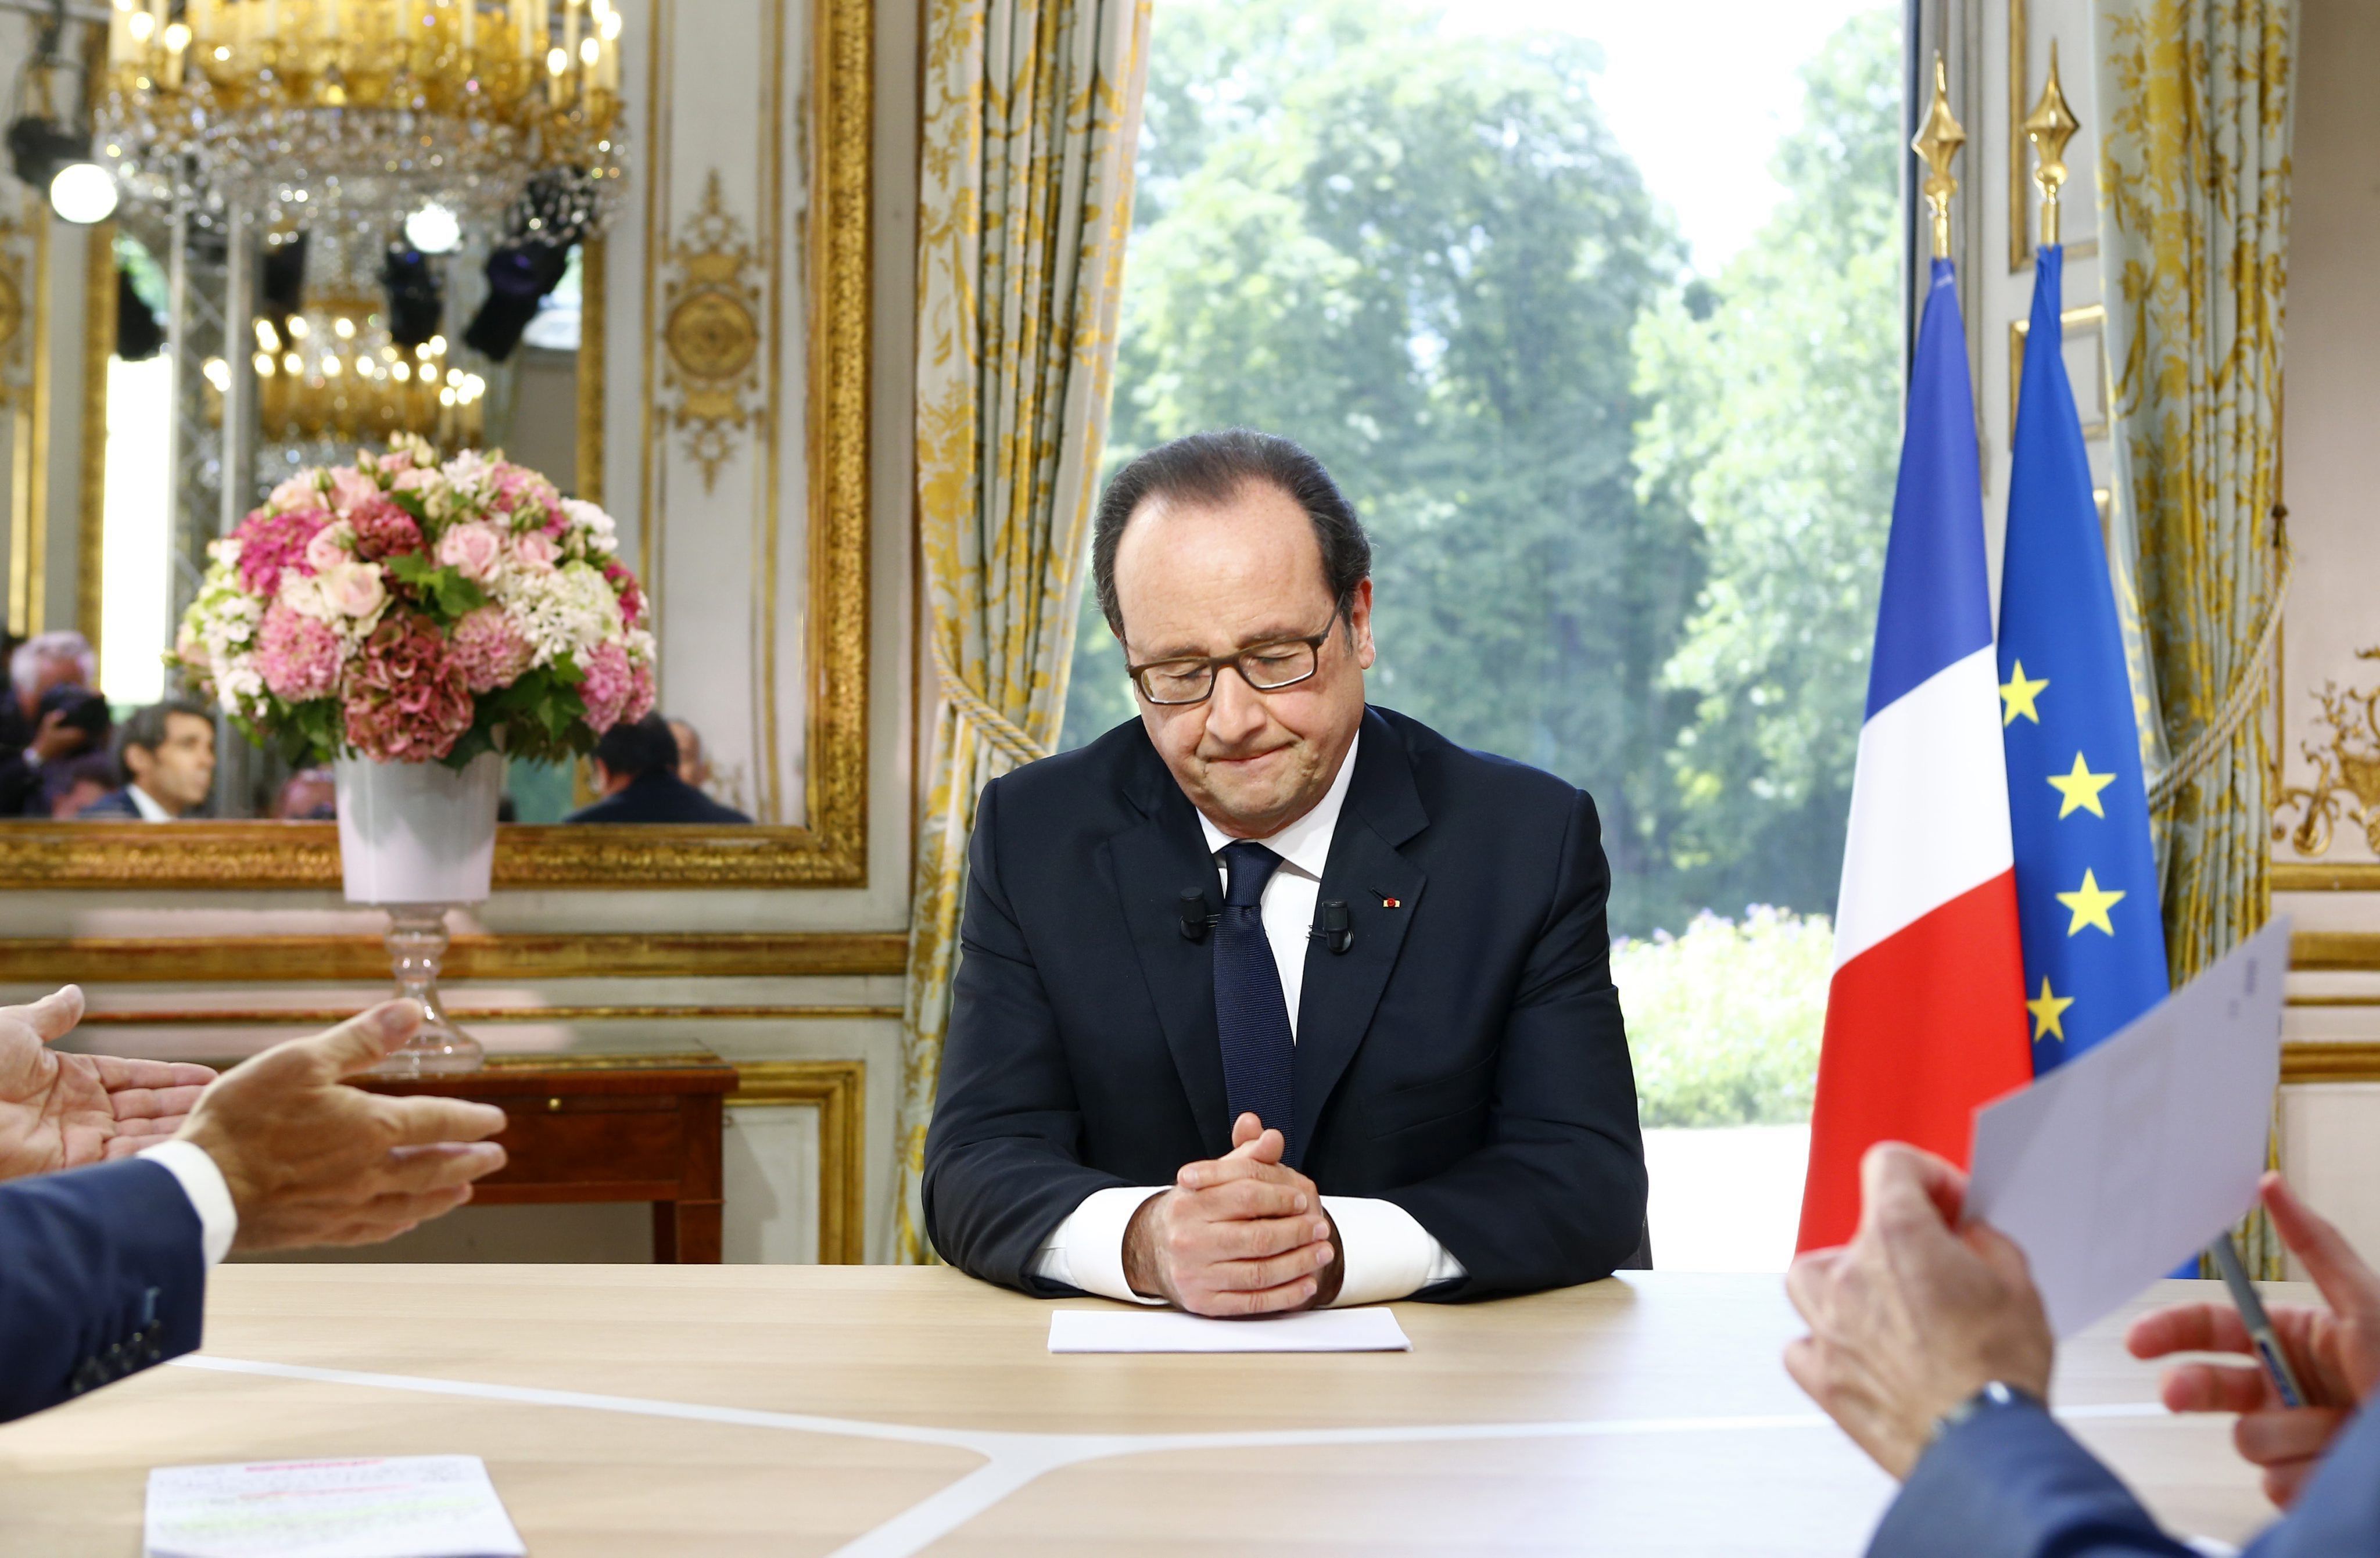 El peluquero y el ministro de Economía complican la reelección a Hollande